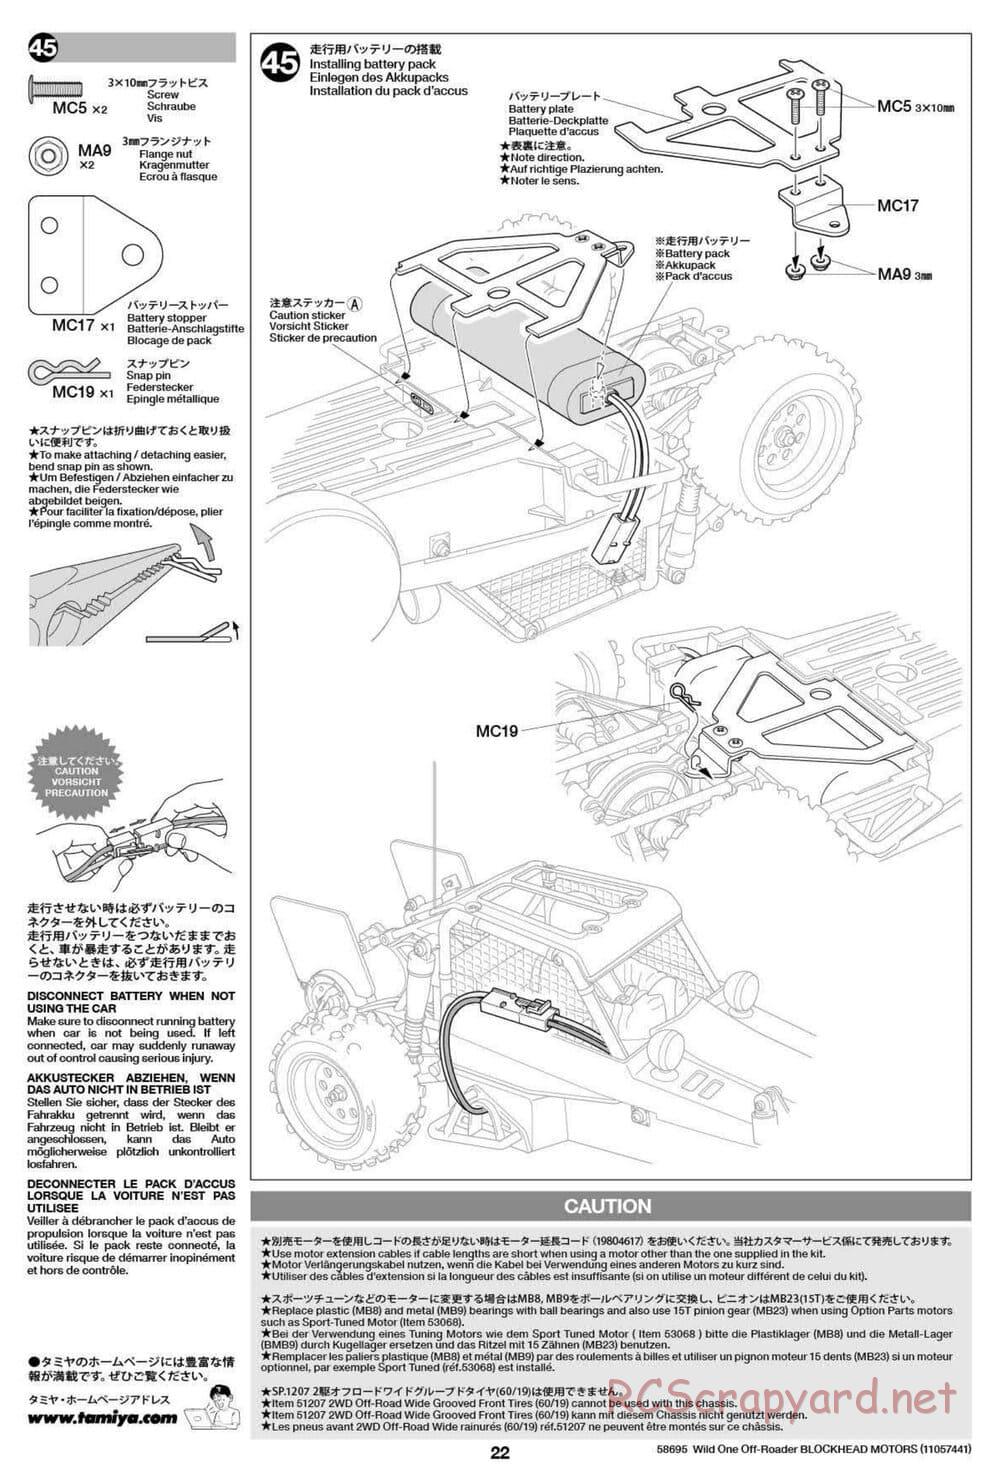 Tamiya - Wild One Off Roader Blockhead Motors - FAV Chassis - Manual - Page 22